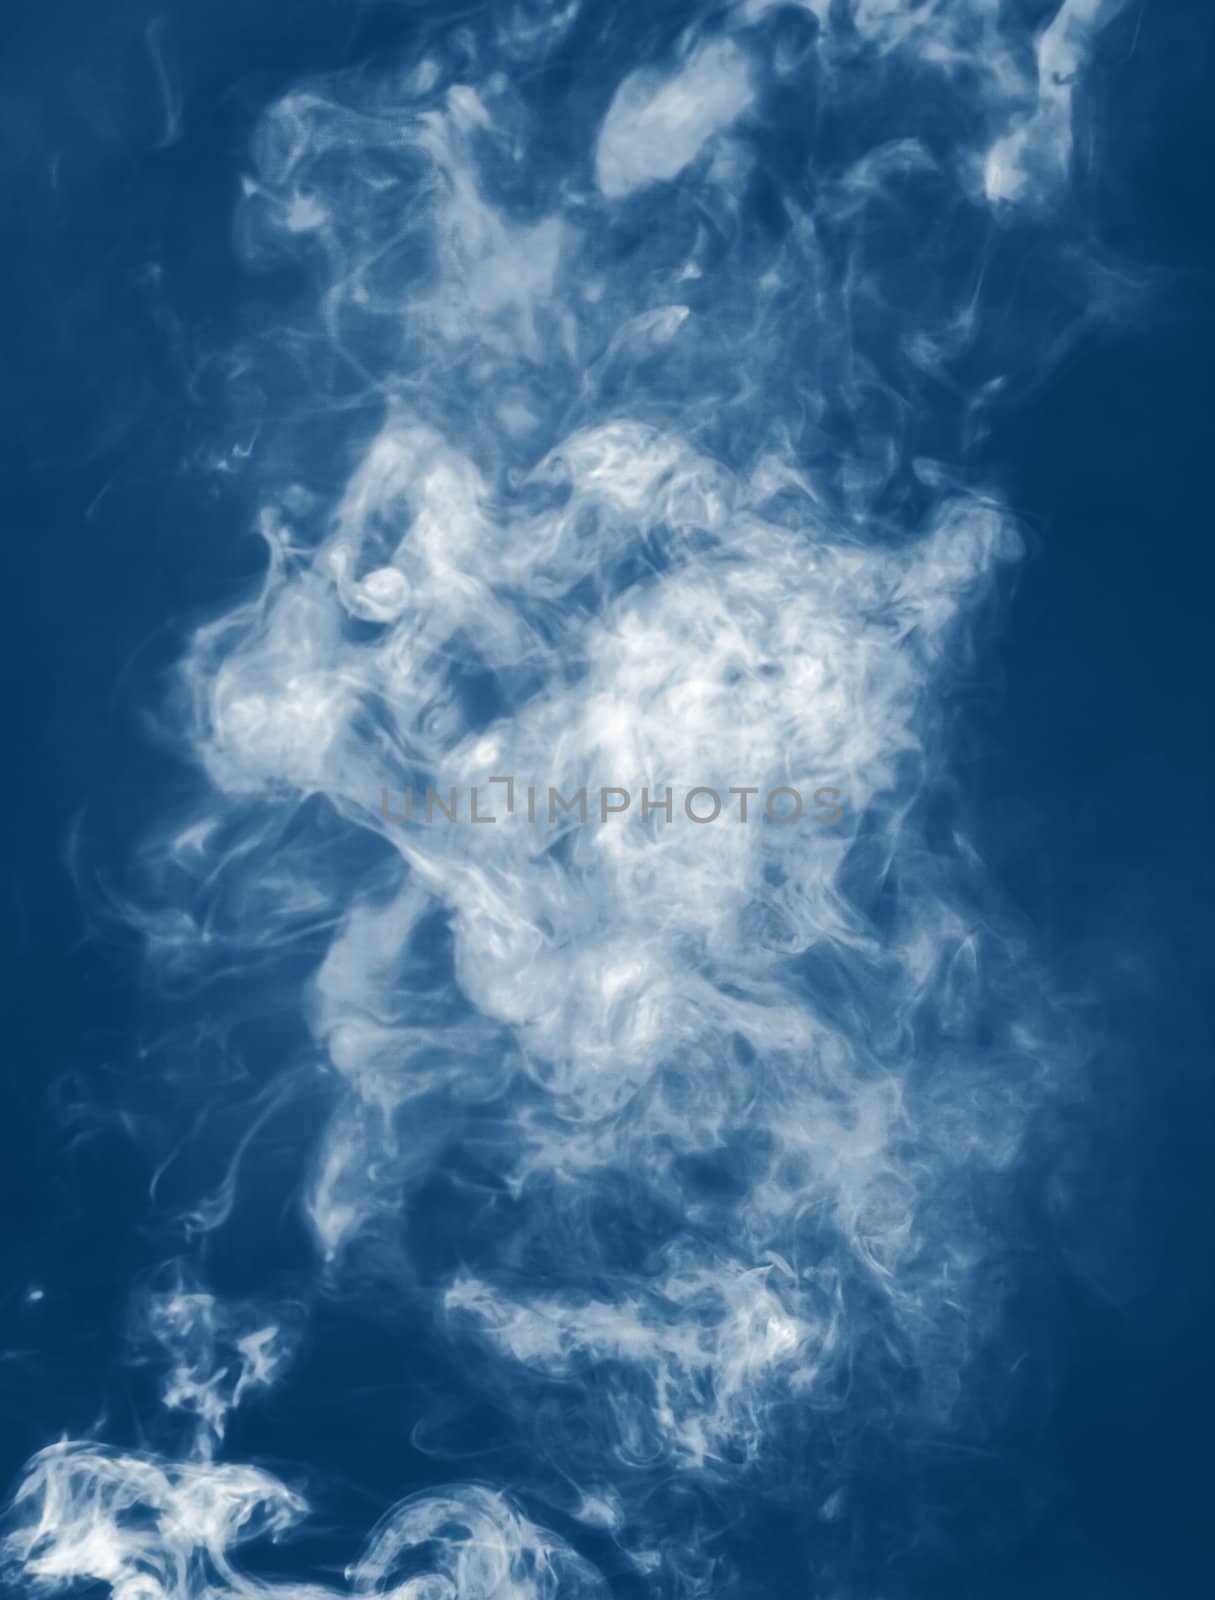 Abstract smoke background by palinchak